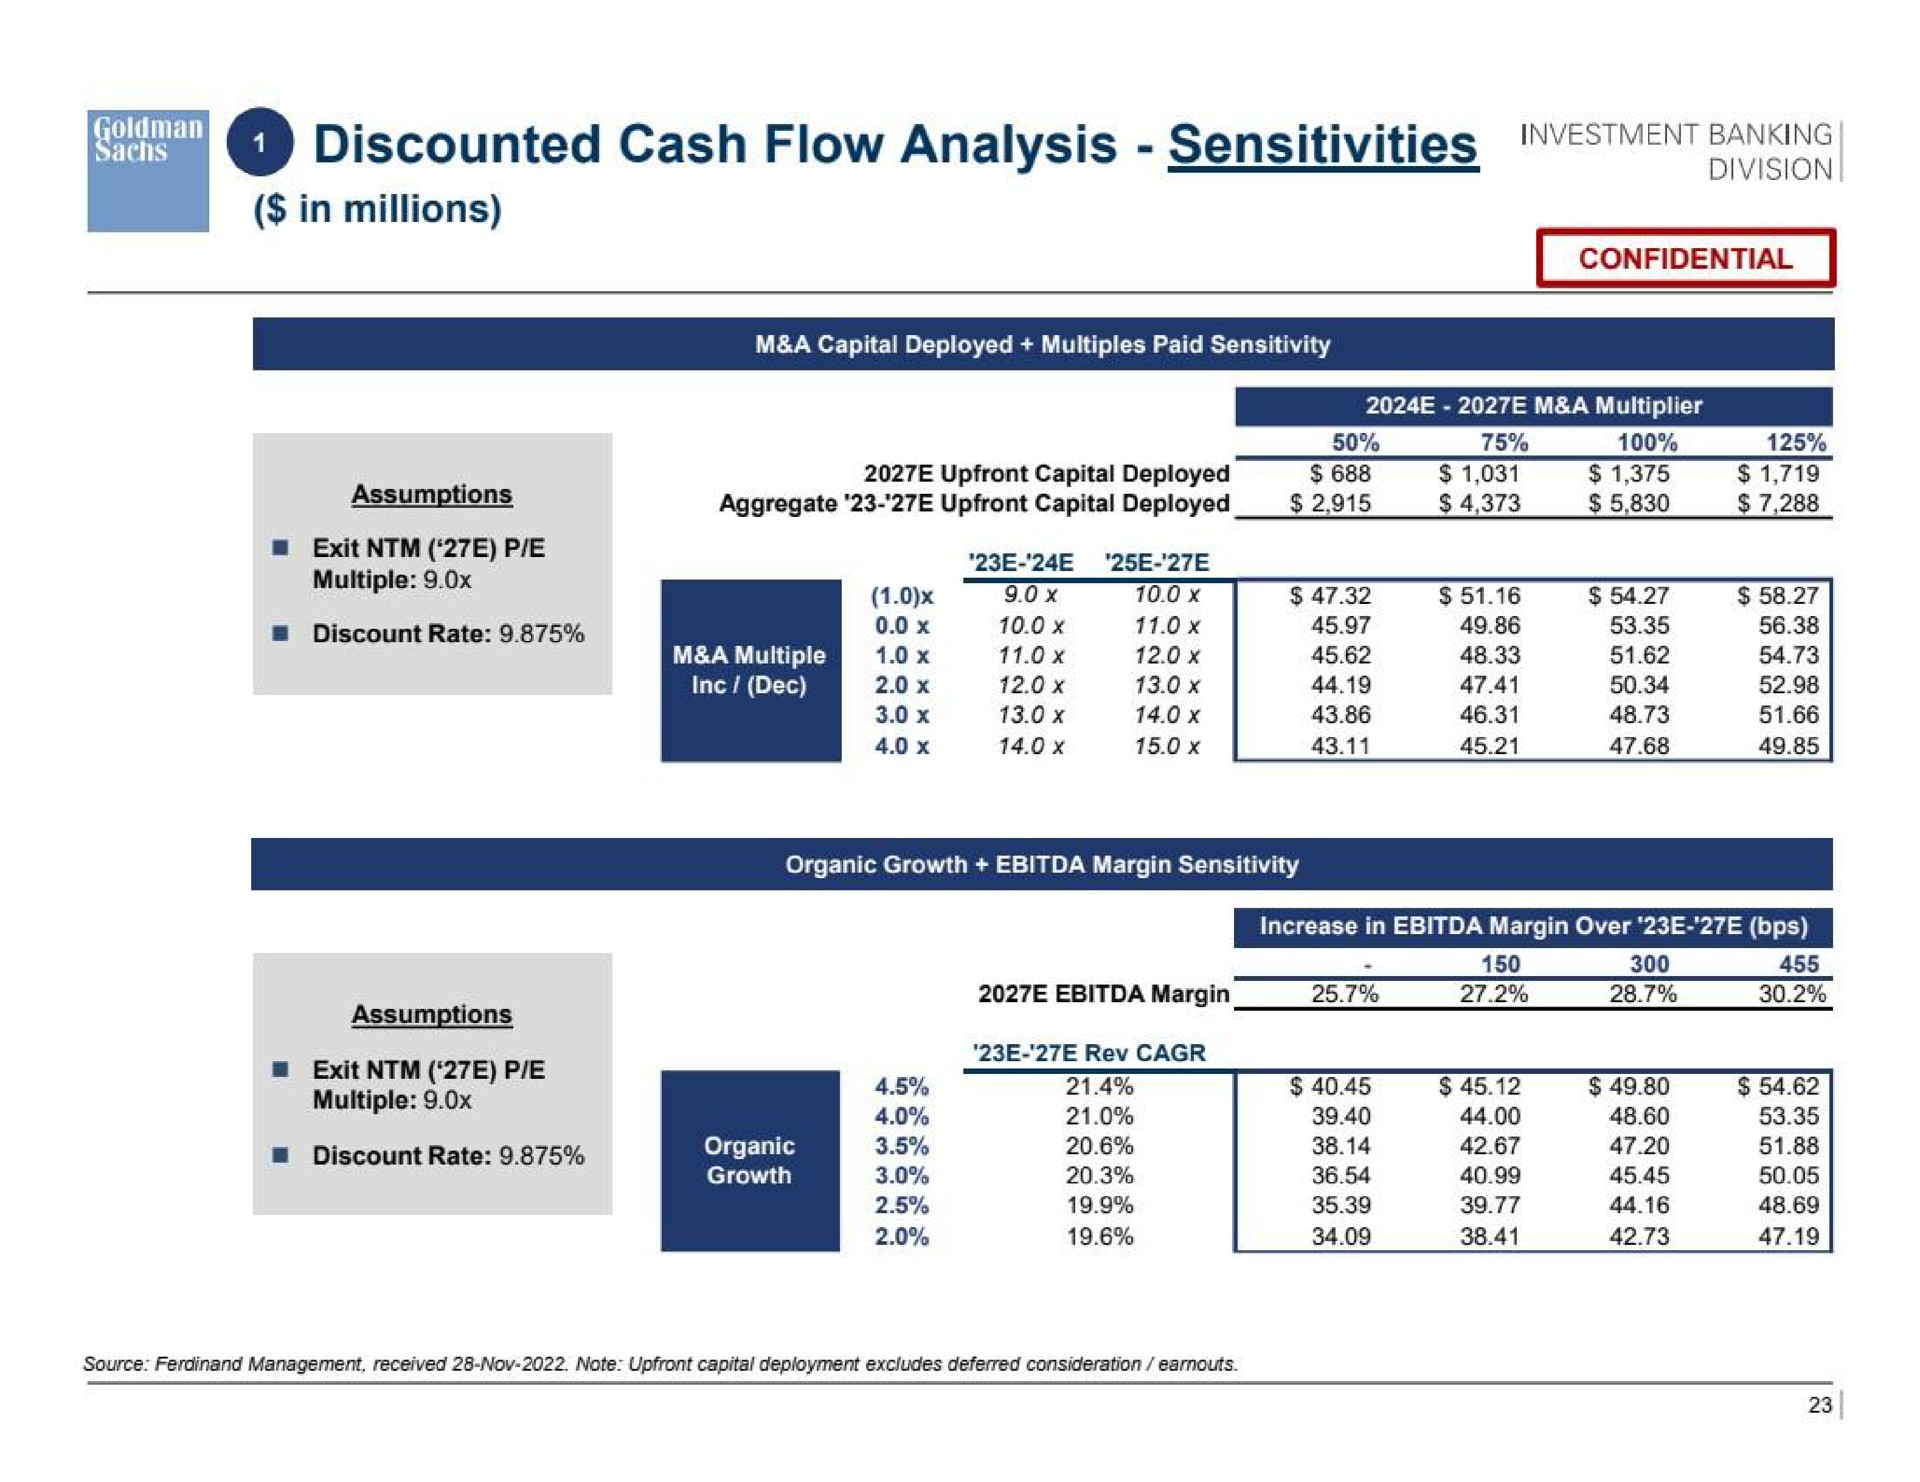 a discounted cash flow analysis sensitivities | Goldman Sachs